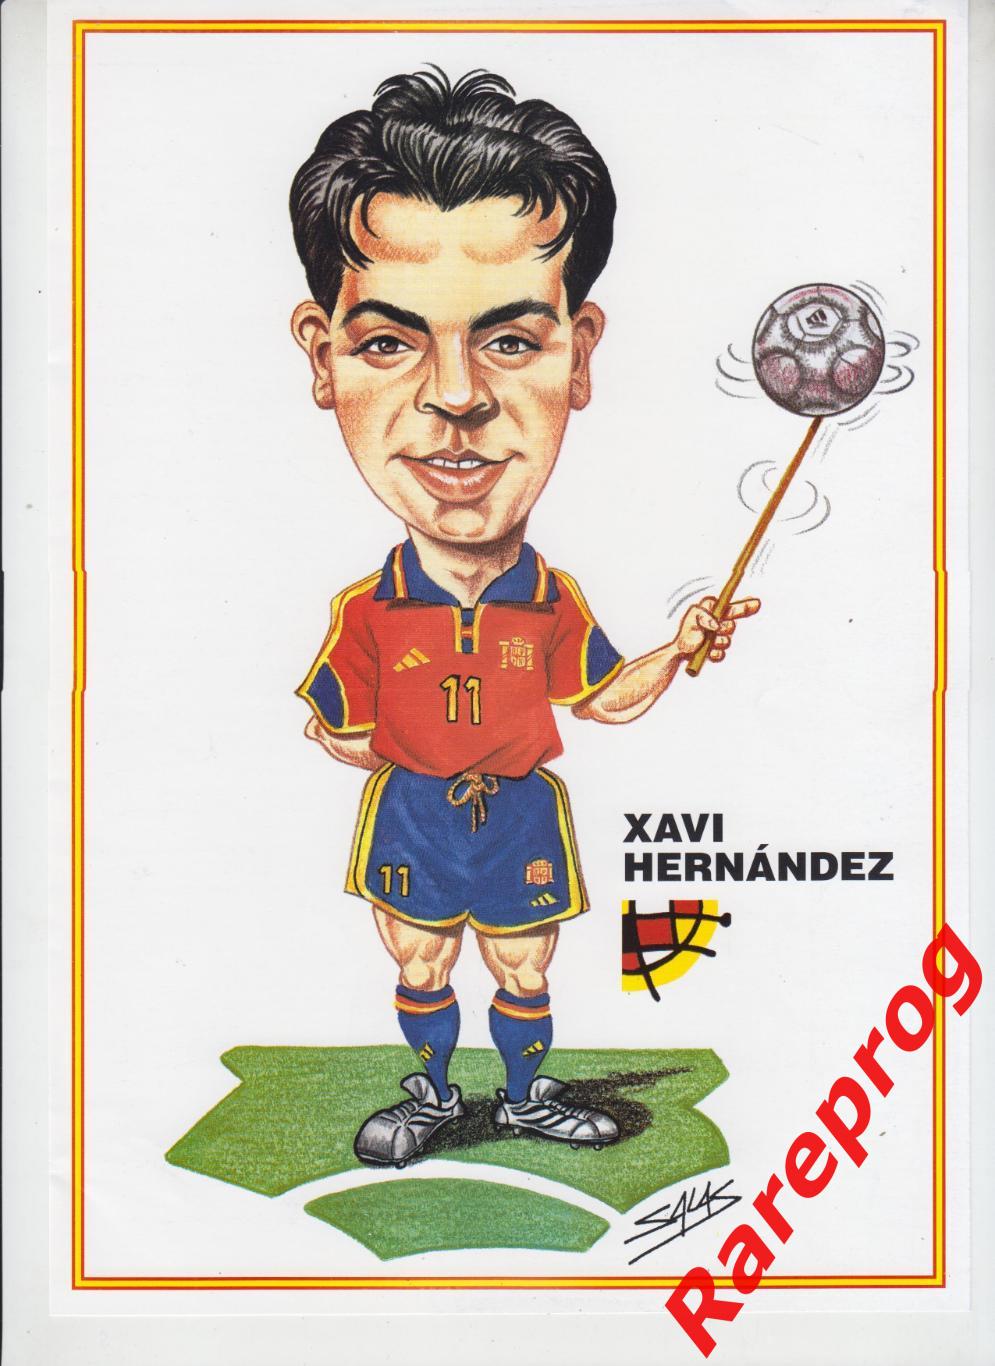 журнал Футбол RFEF Испания № 32 январь 2001 - превью ЧЕ футзал Россия 1